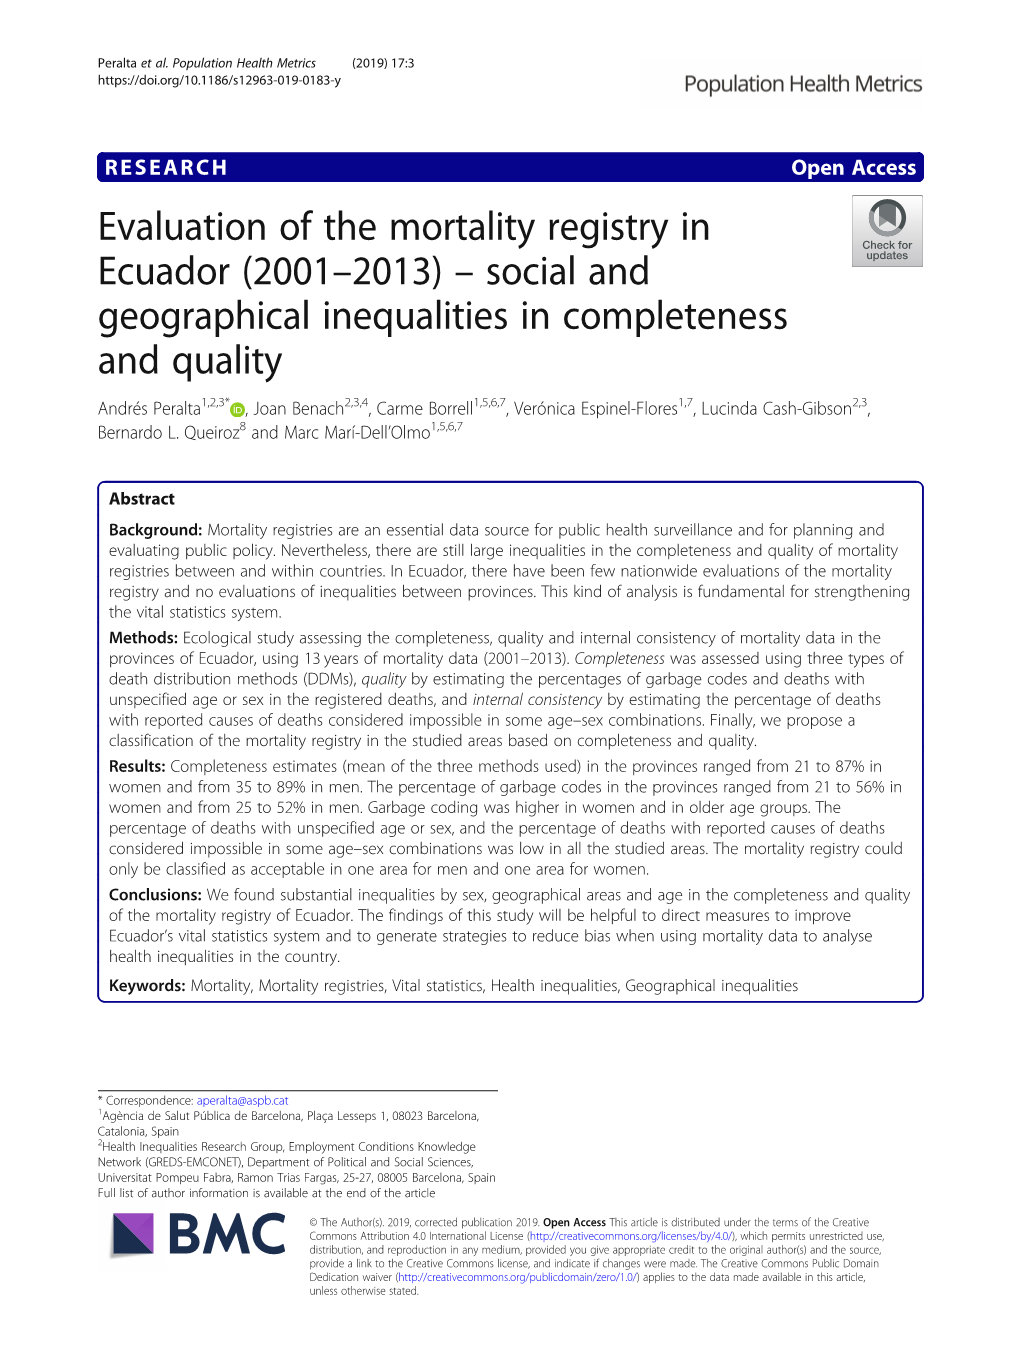 Evaluation of the Mortality Registry in Ecuador (2001–2013)